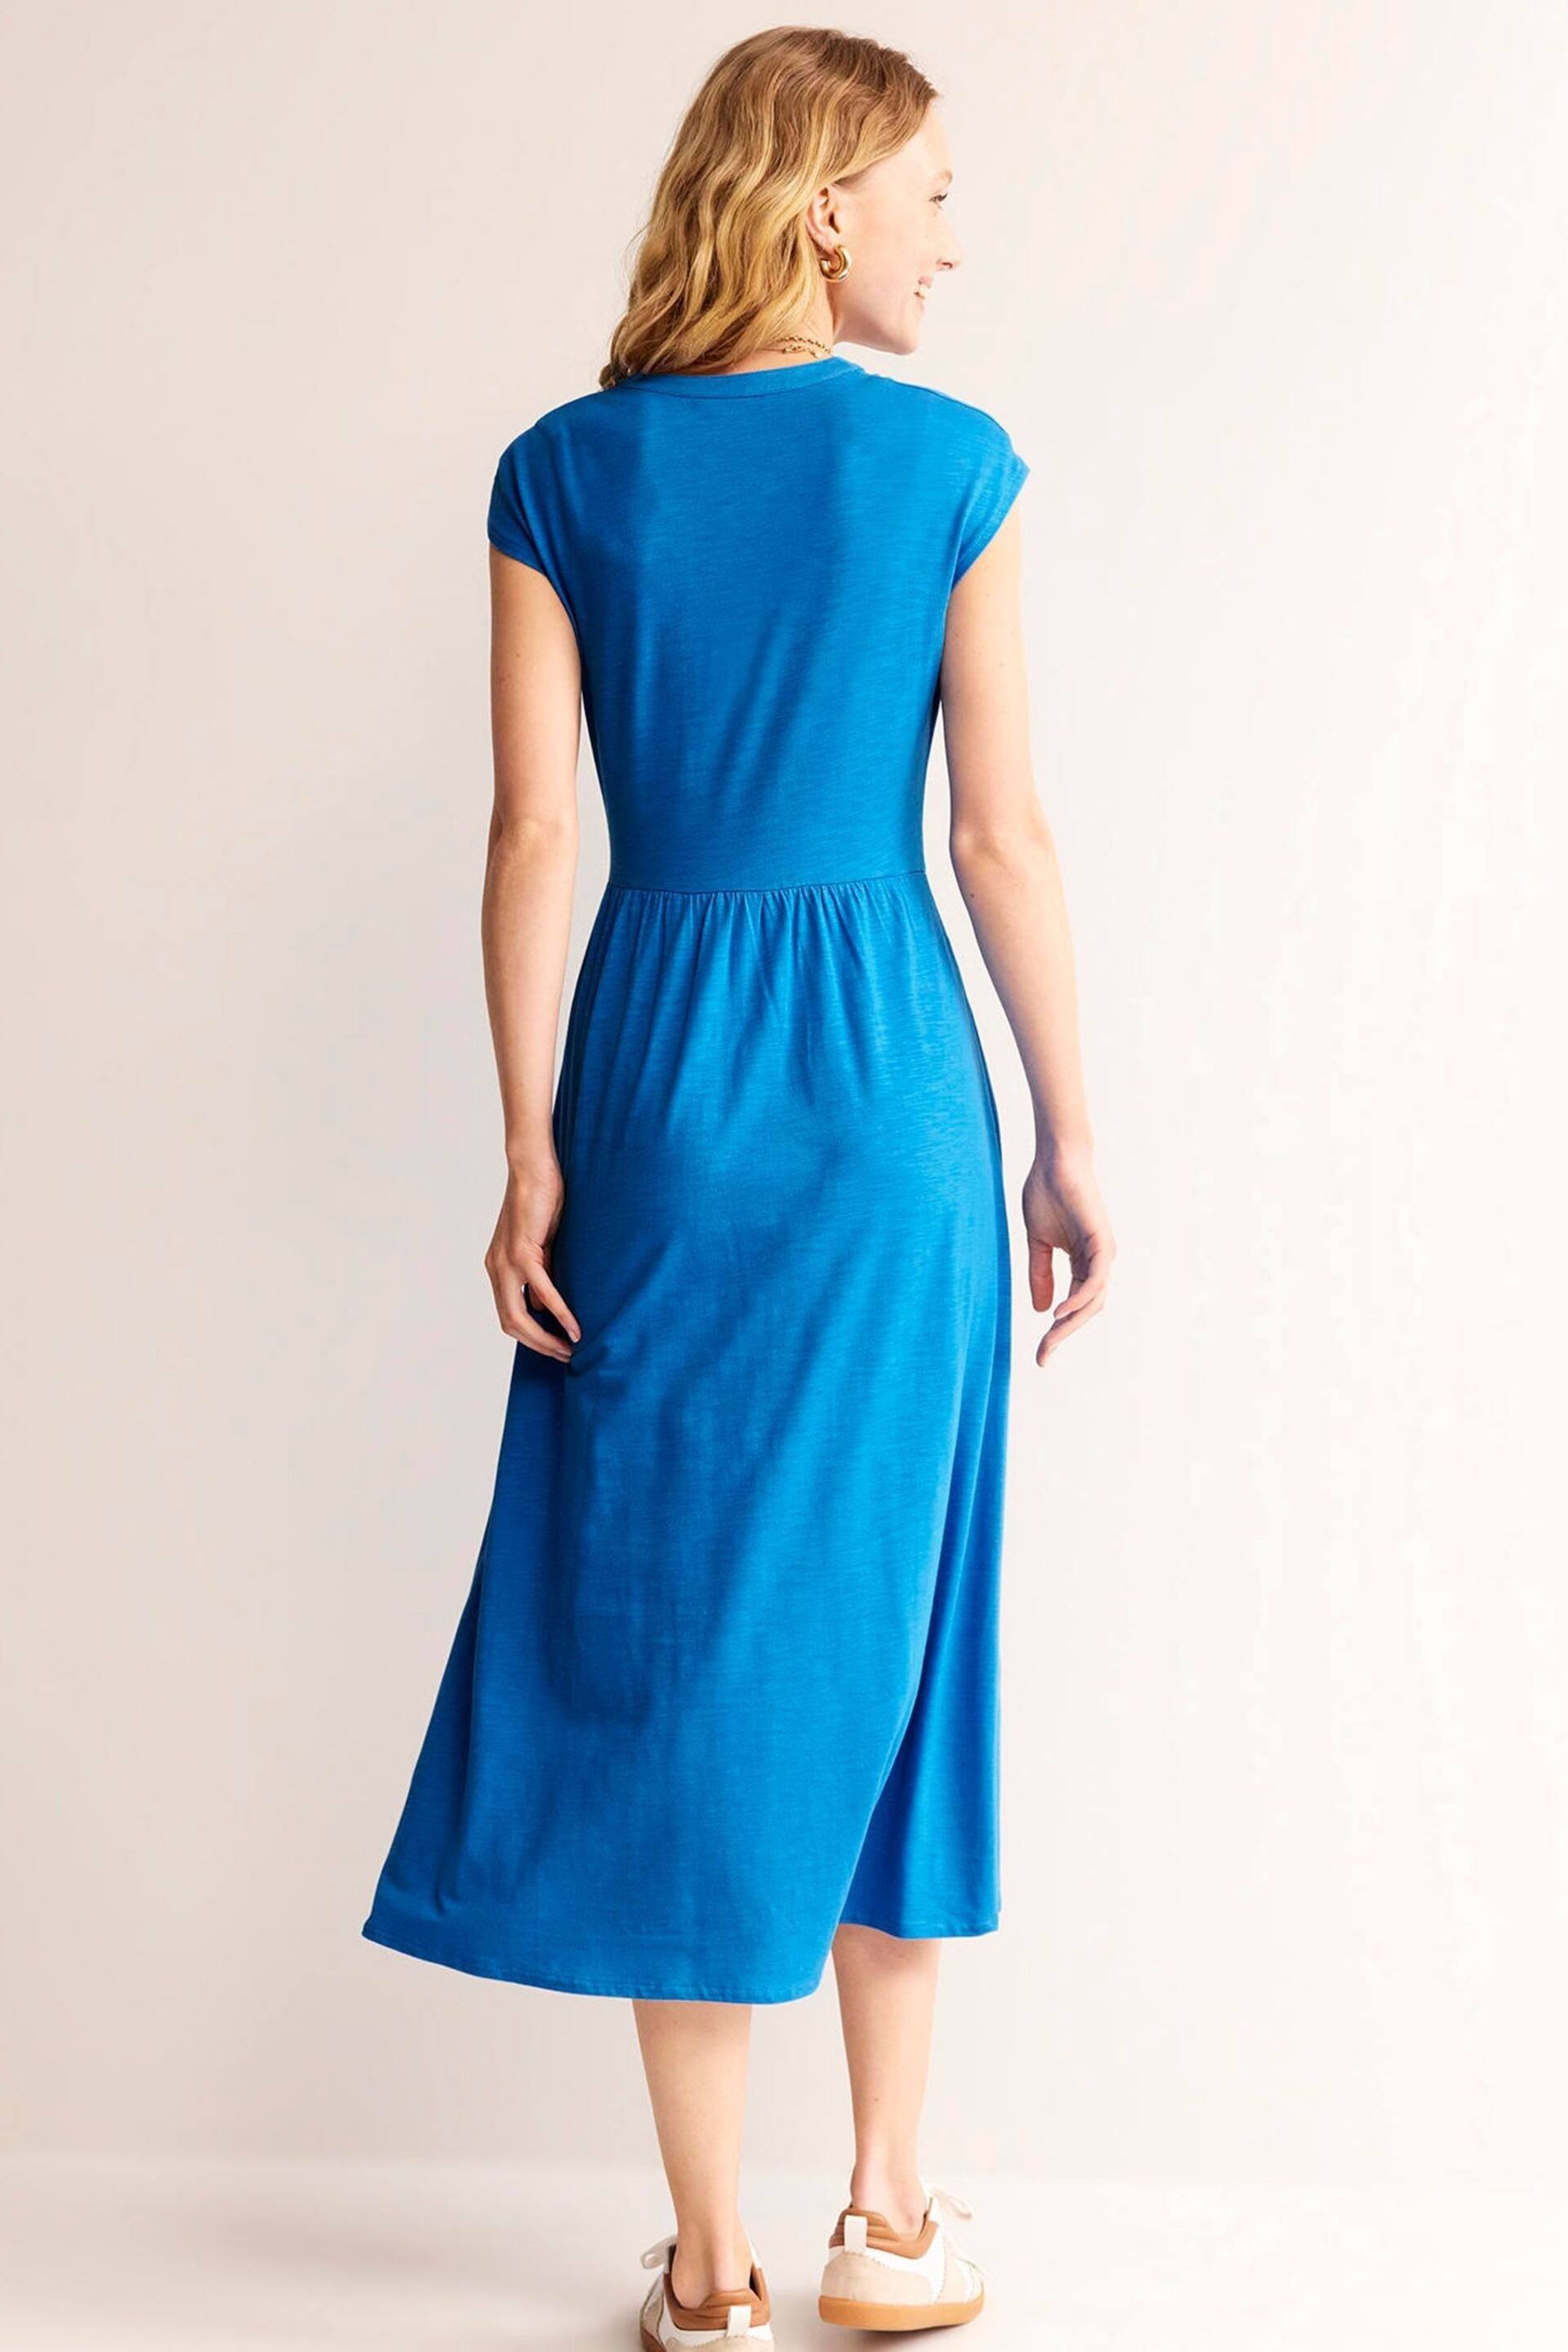 Boden Blue Chloe Notch Jersey Midi Dress - Image 4 of 6